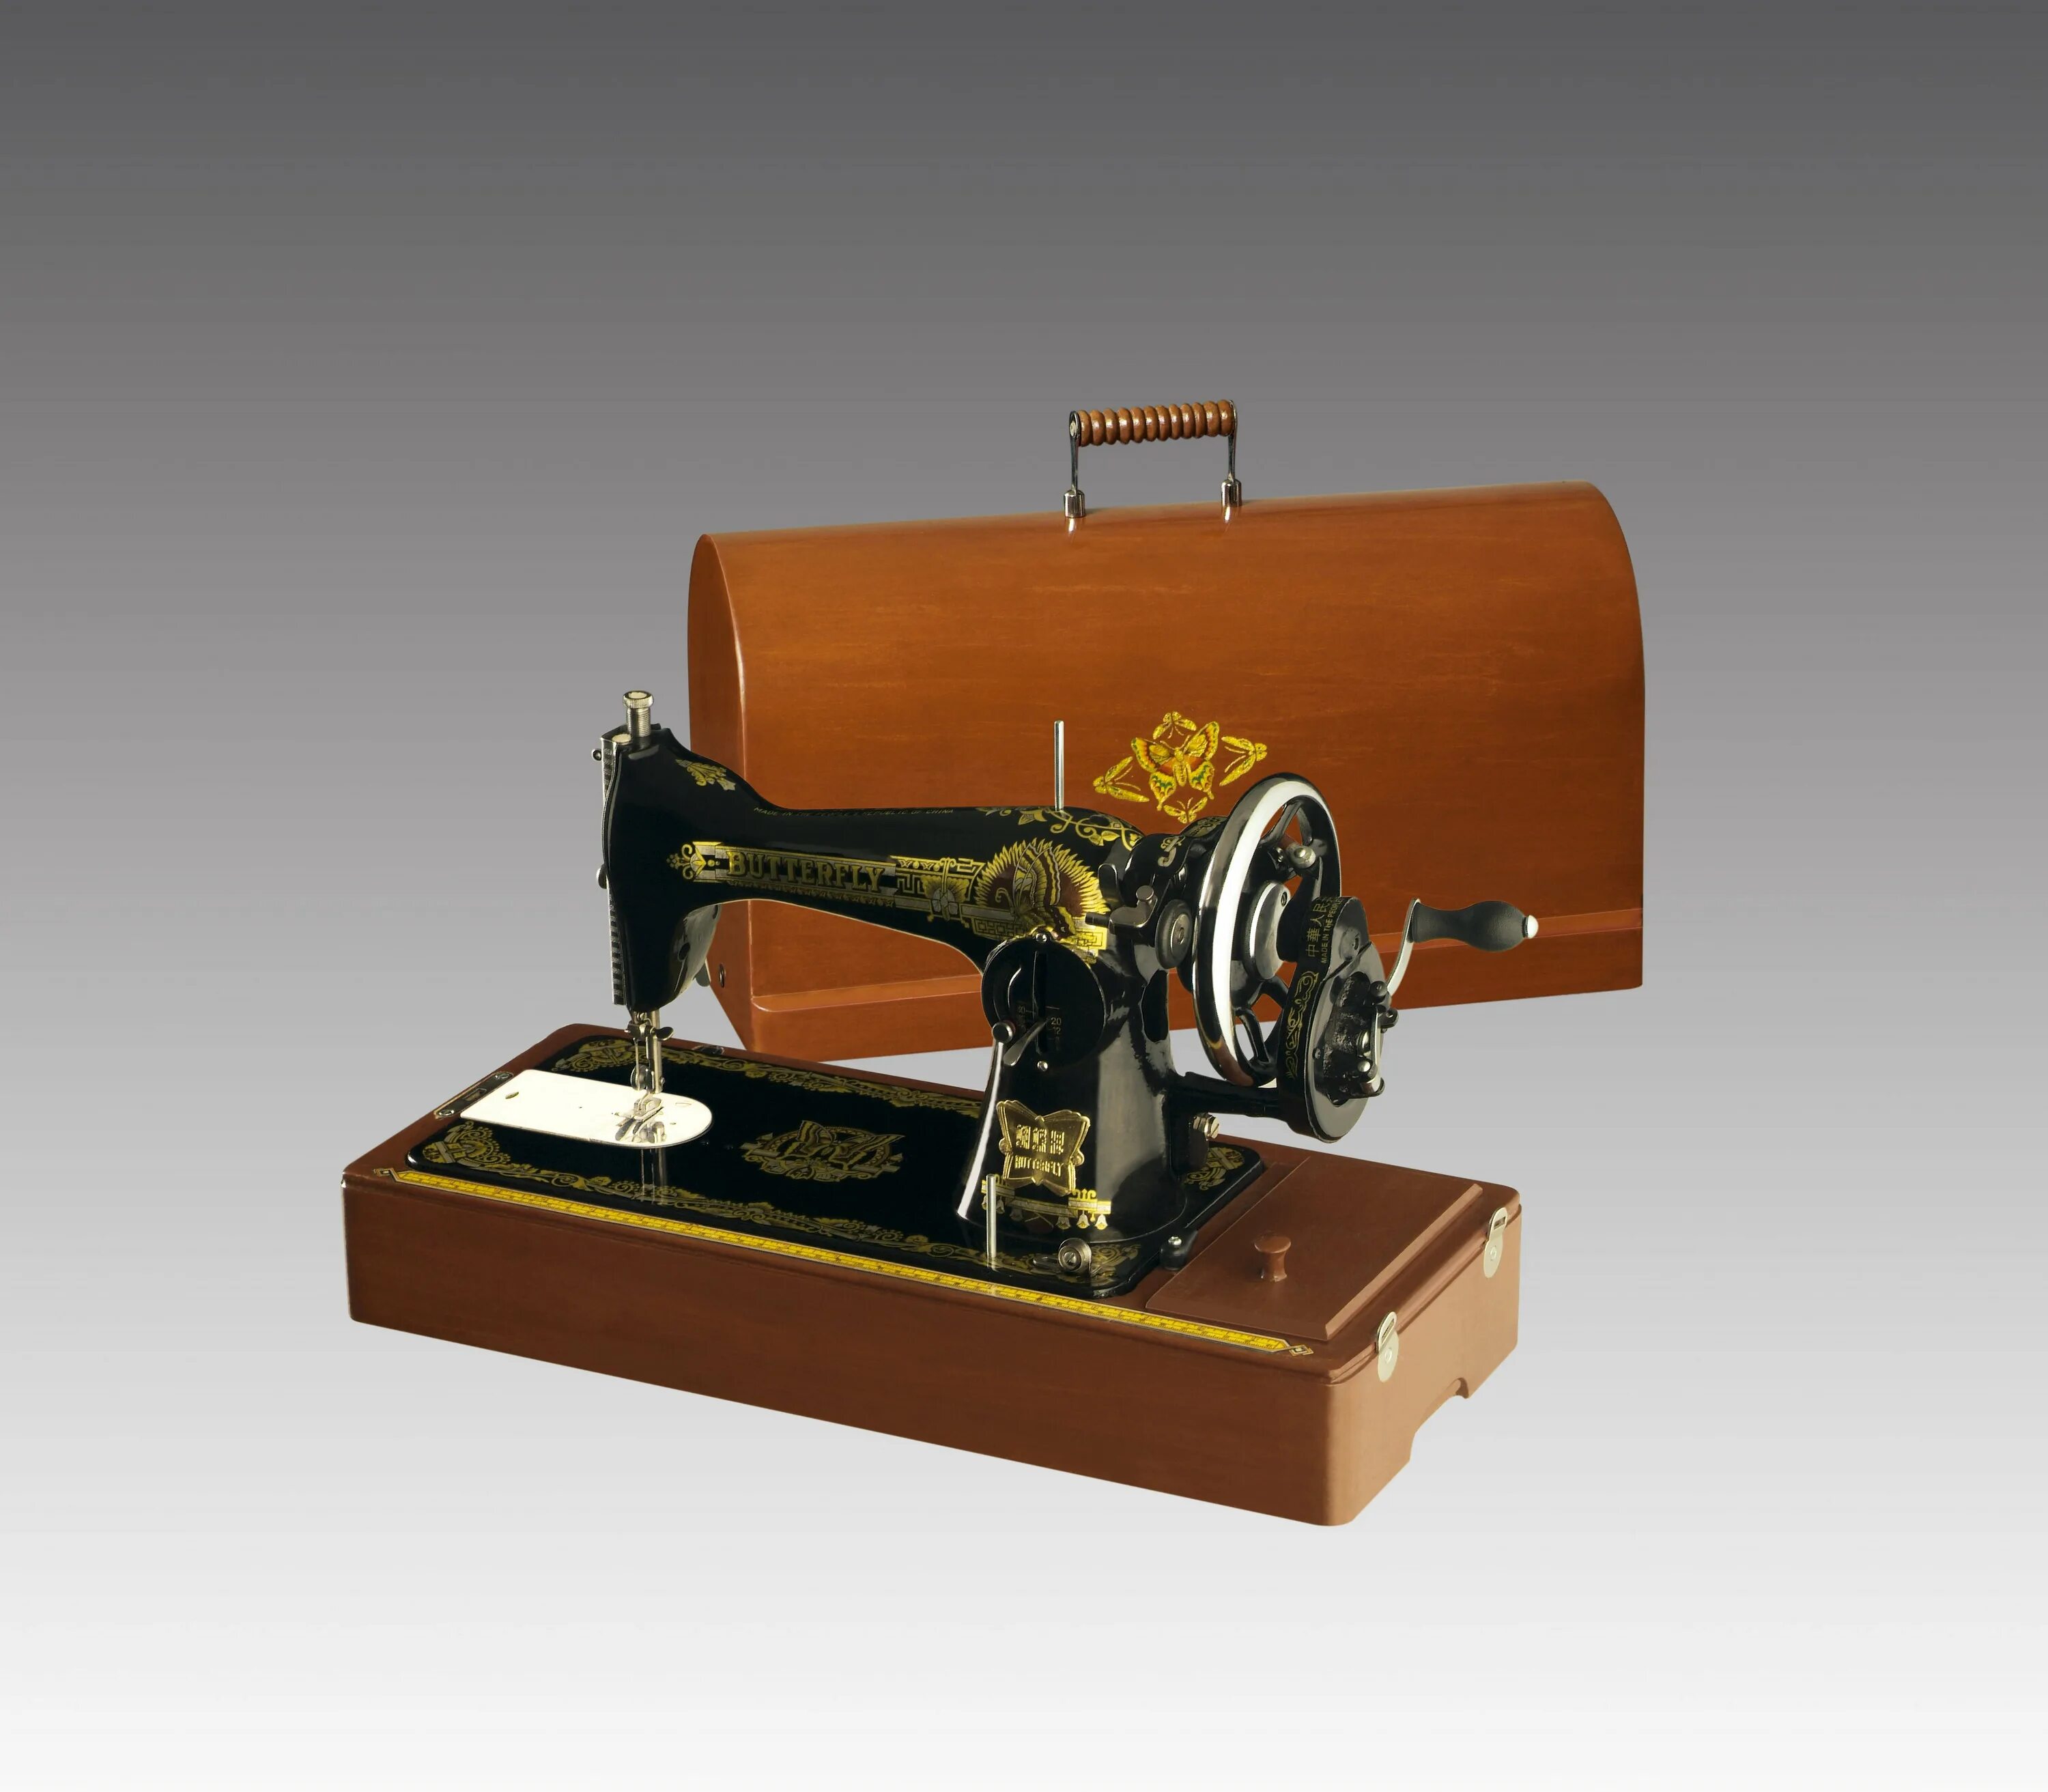 Ручная швейная машинка видео. Швейная машинка Butterfly jg6001. Швейная машинка Butterfly 1958г. Китайская швейная машинка Баттерфляй. Баттерфляй швейная машинка 1956.